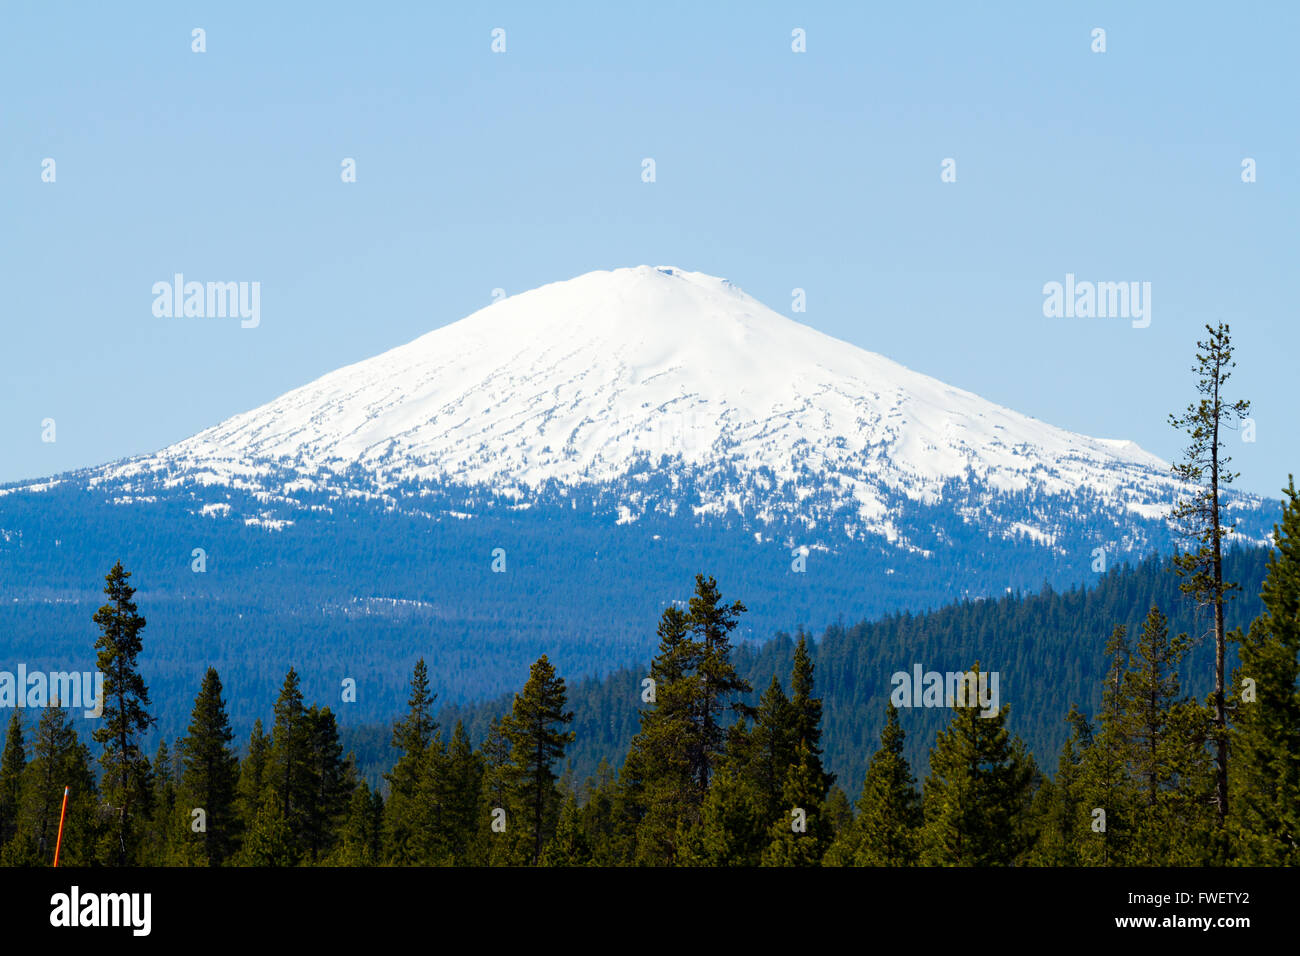 Mount Bachelor en Oregon es fotografiado desde una distancia para crear esta naturaleza el paisaje de la montaña cubierta de nieve. Foto de stock